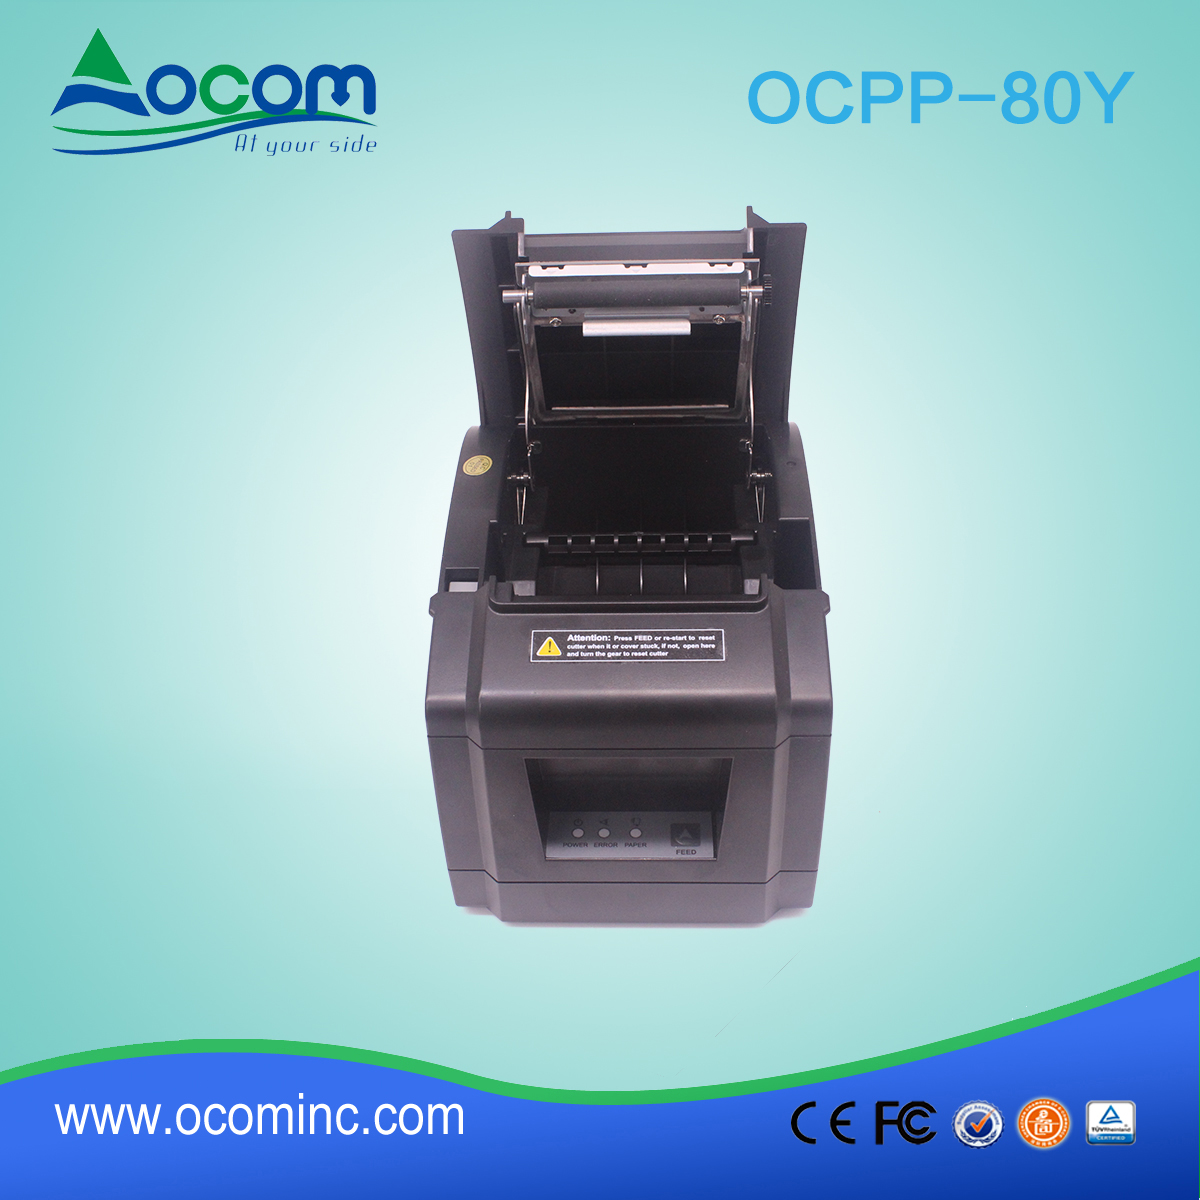 OCPP-80Y-China impresora térmica barata de 80 mm con cortador automático